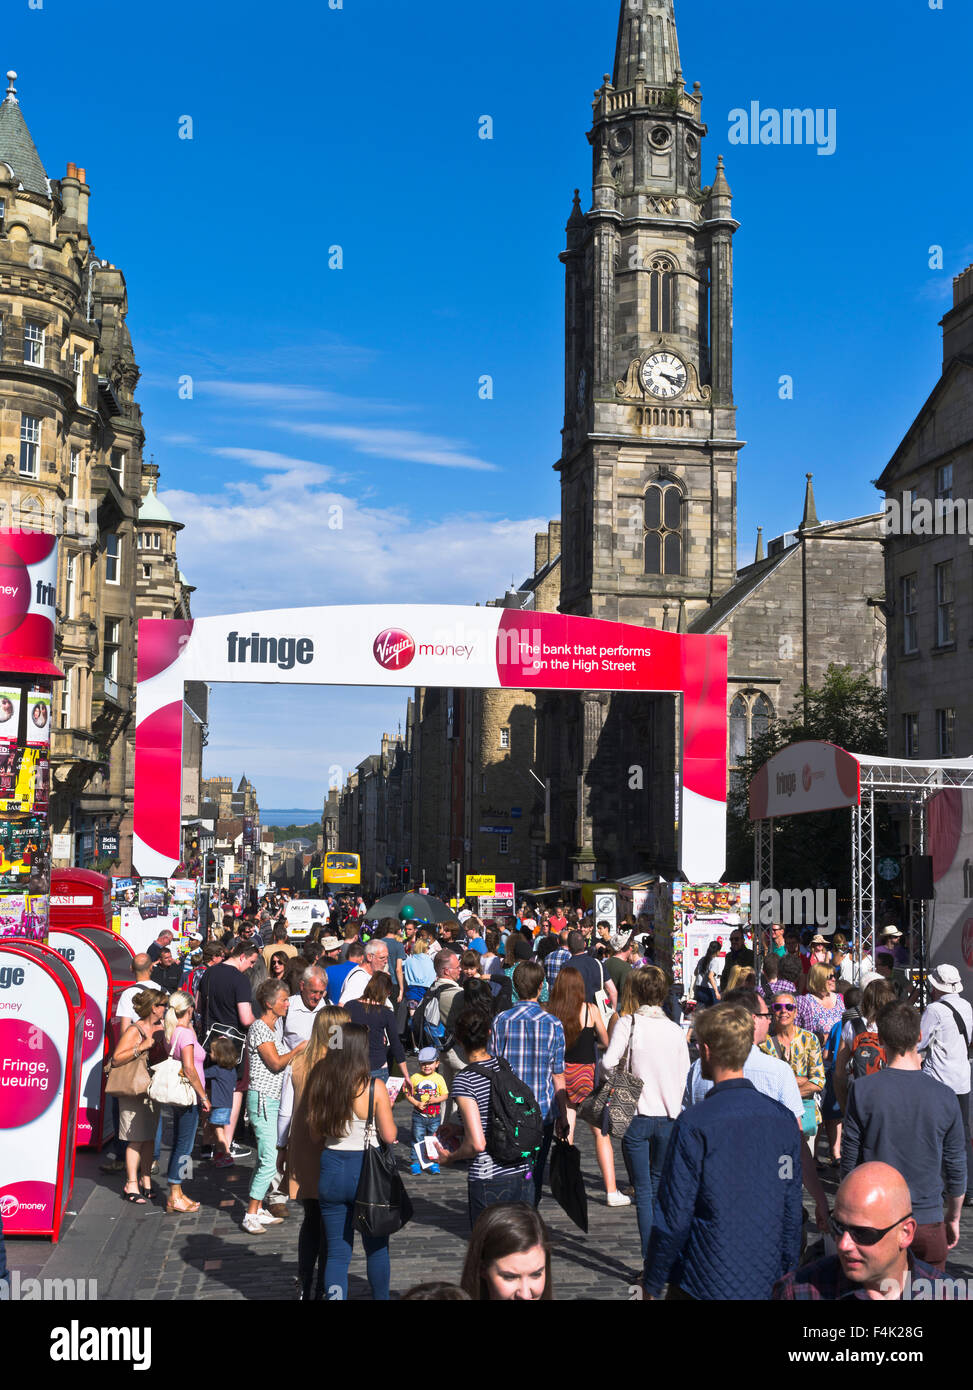 dh Edinburgh Fringe Festival ROYAL MILE EDINBURGH SCHOTTLAND Touristen Sommer Sonnenschein Straße Menschenmenge Stadt geschäftige Menschenmassen ziehen die Touristen an Stockfoto